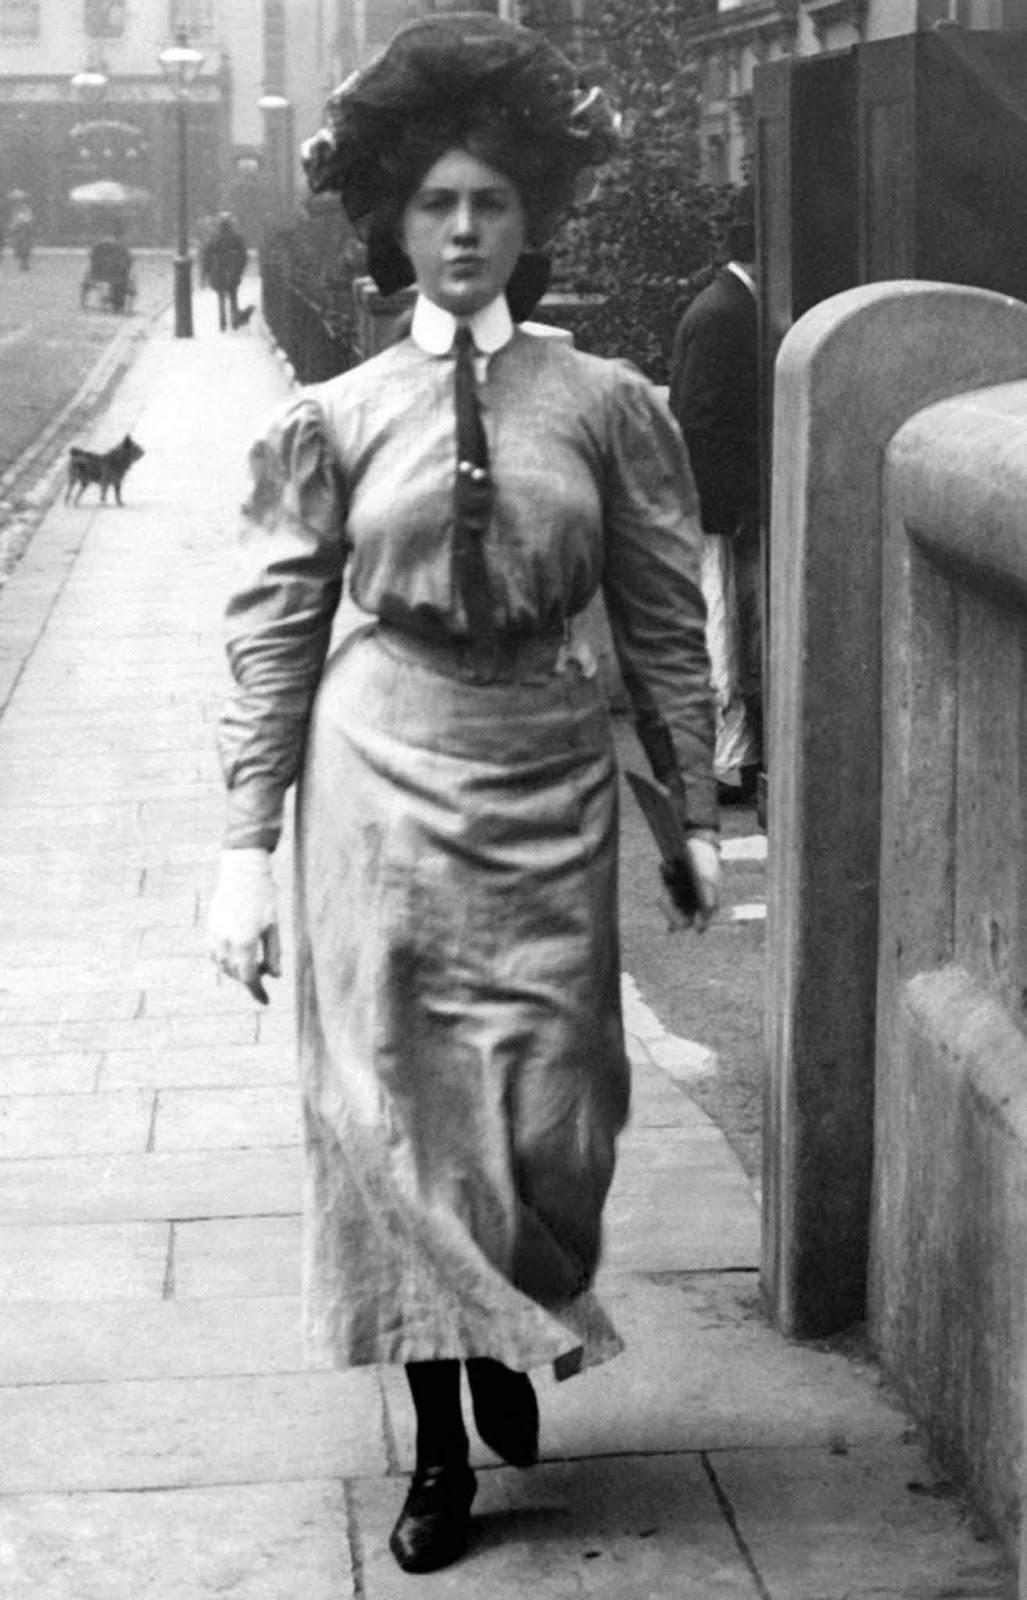 London street style pendant la belle époque, 1905-1908